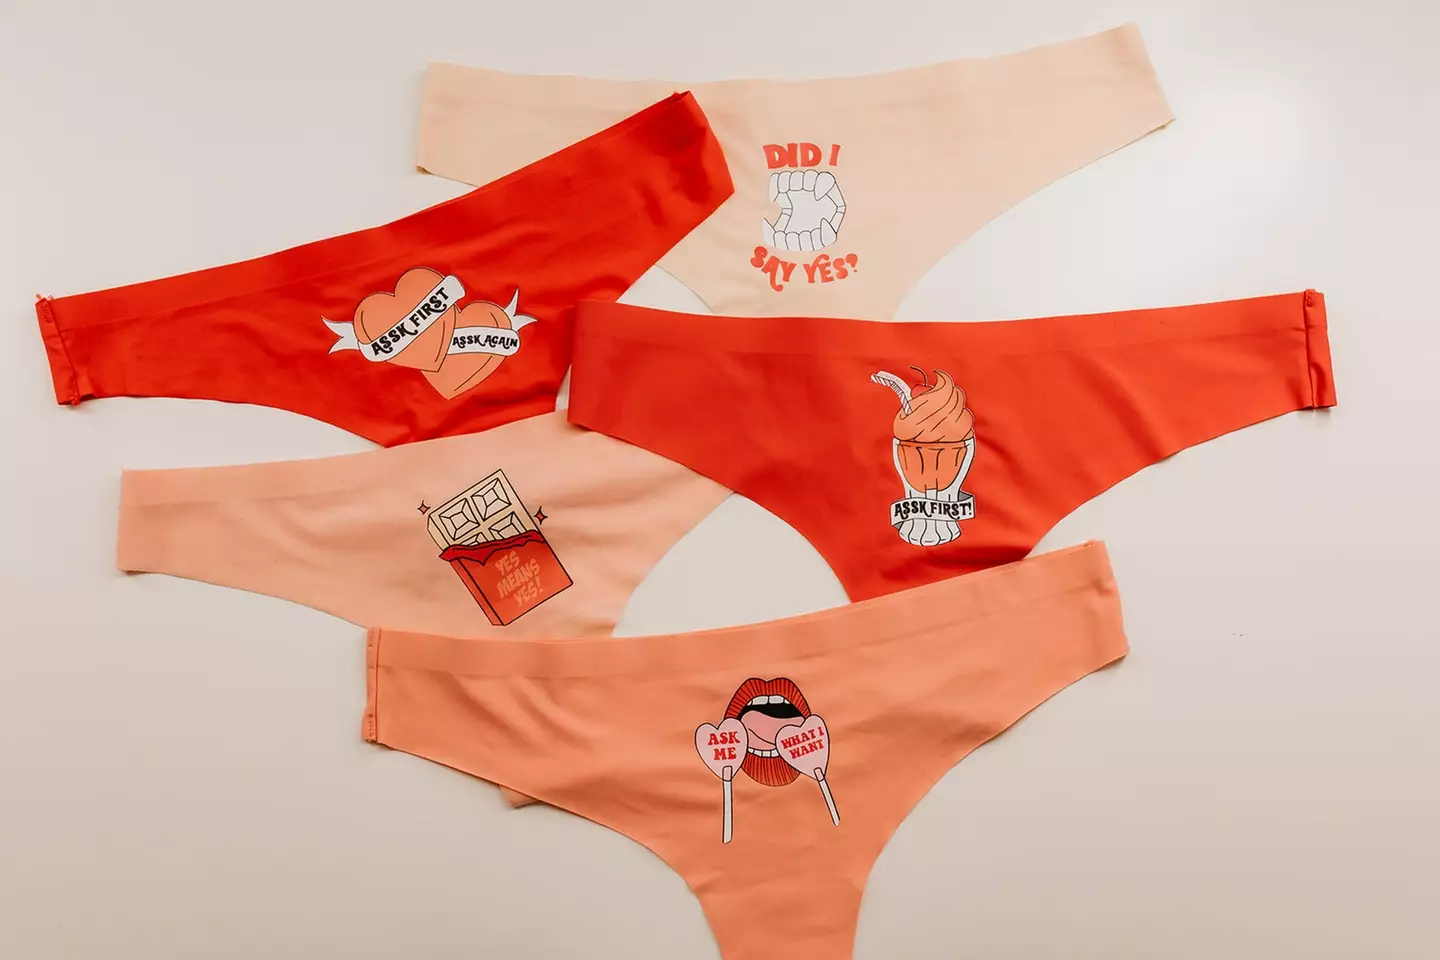 The underwear features slogans (